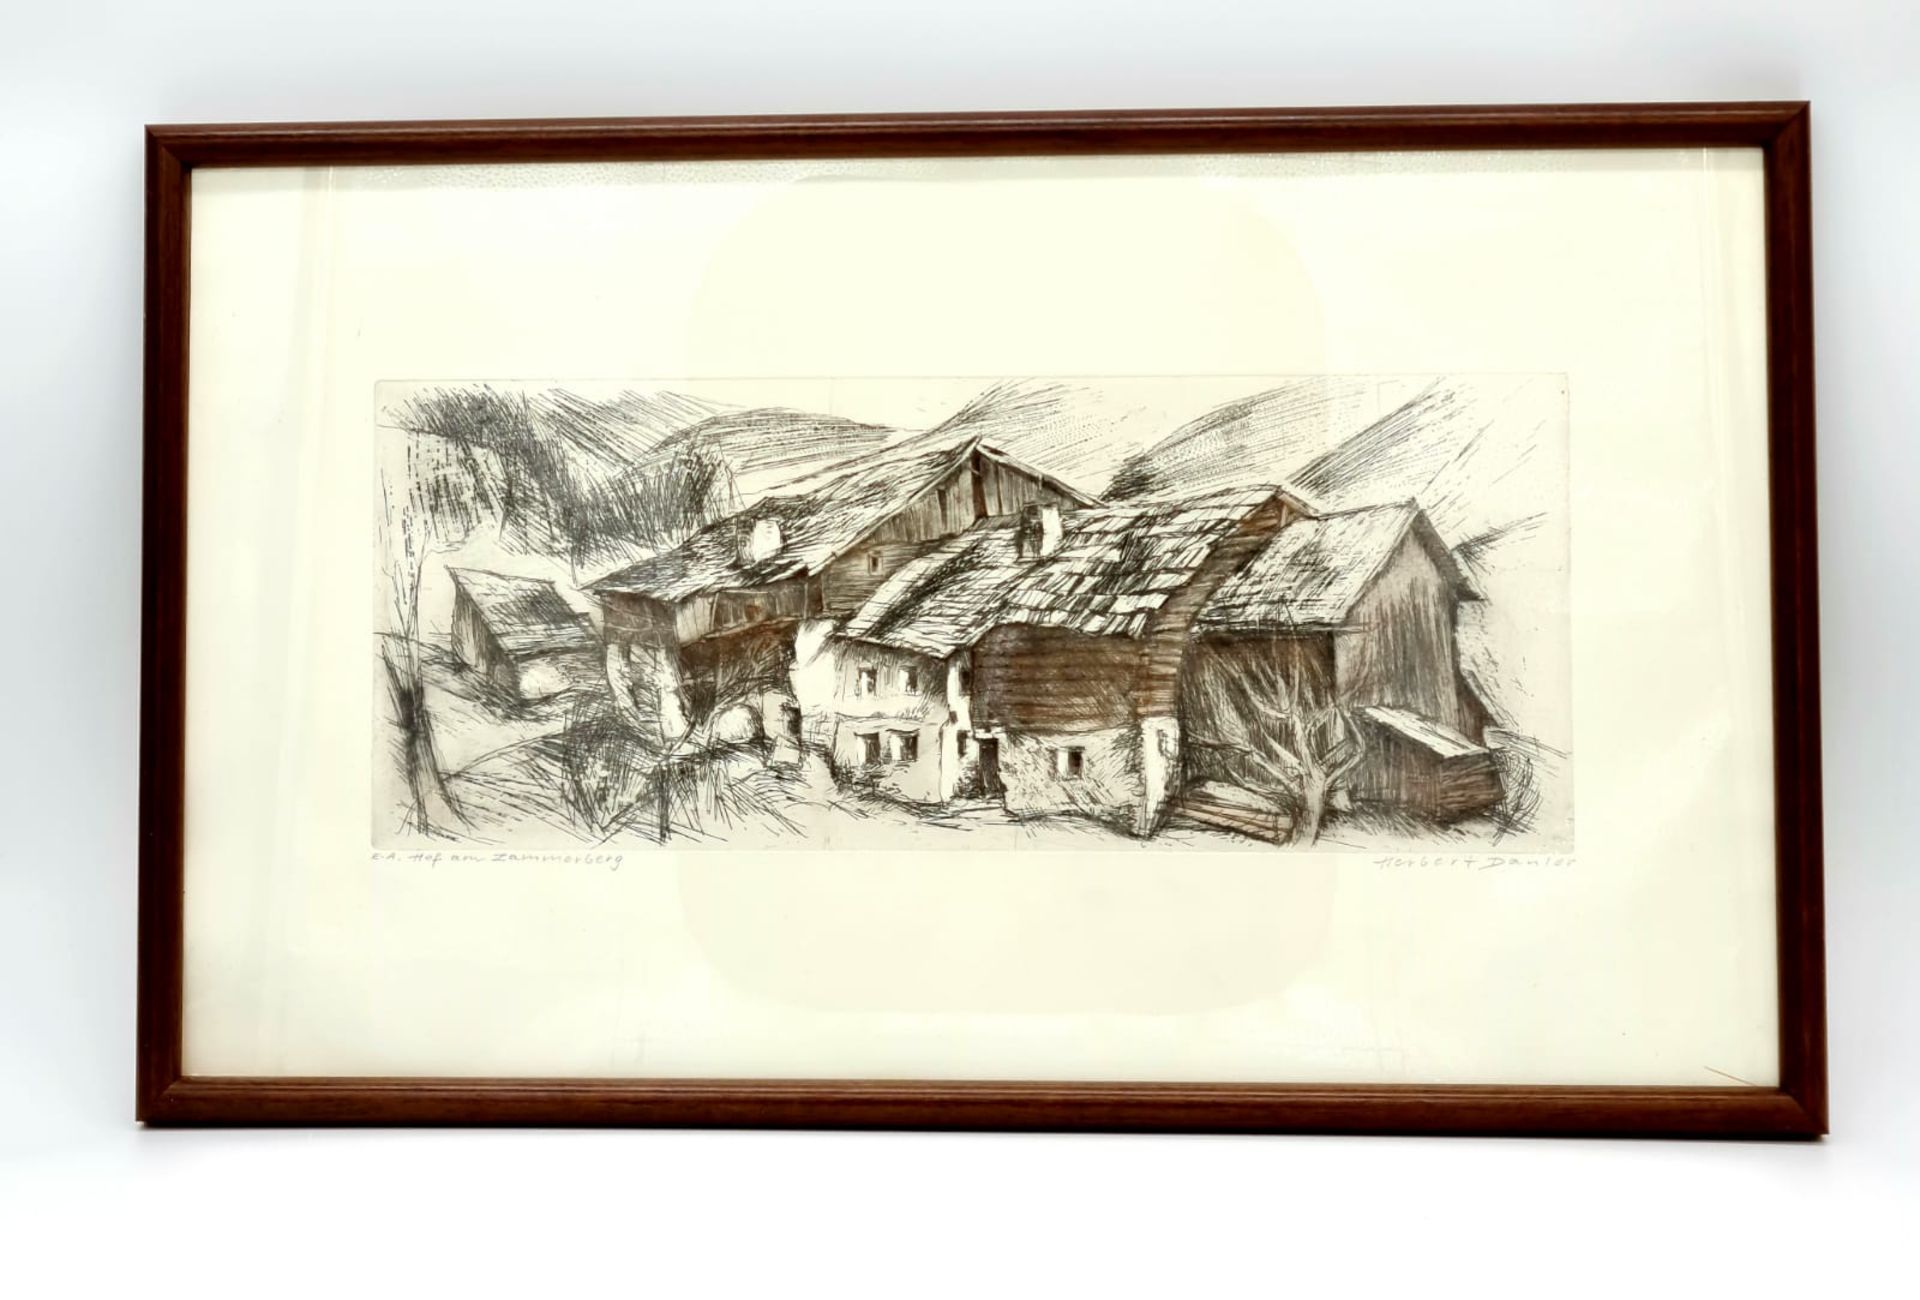 Herbert Danler , (Fulpmes, Tirol, 1928-2011 Telfes im Stubaital) Hof am Zammerberg, signiert unten - Image 4 of 4